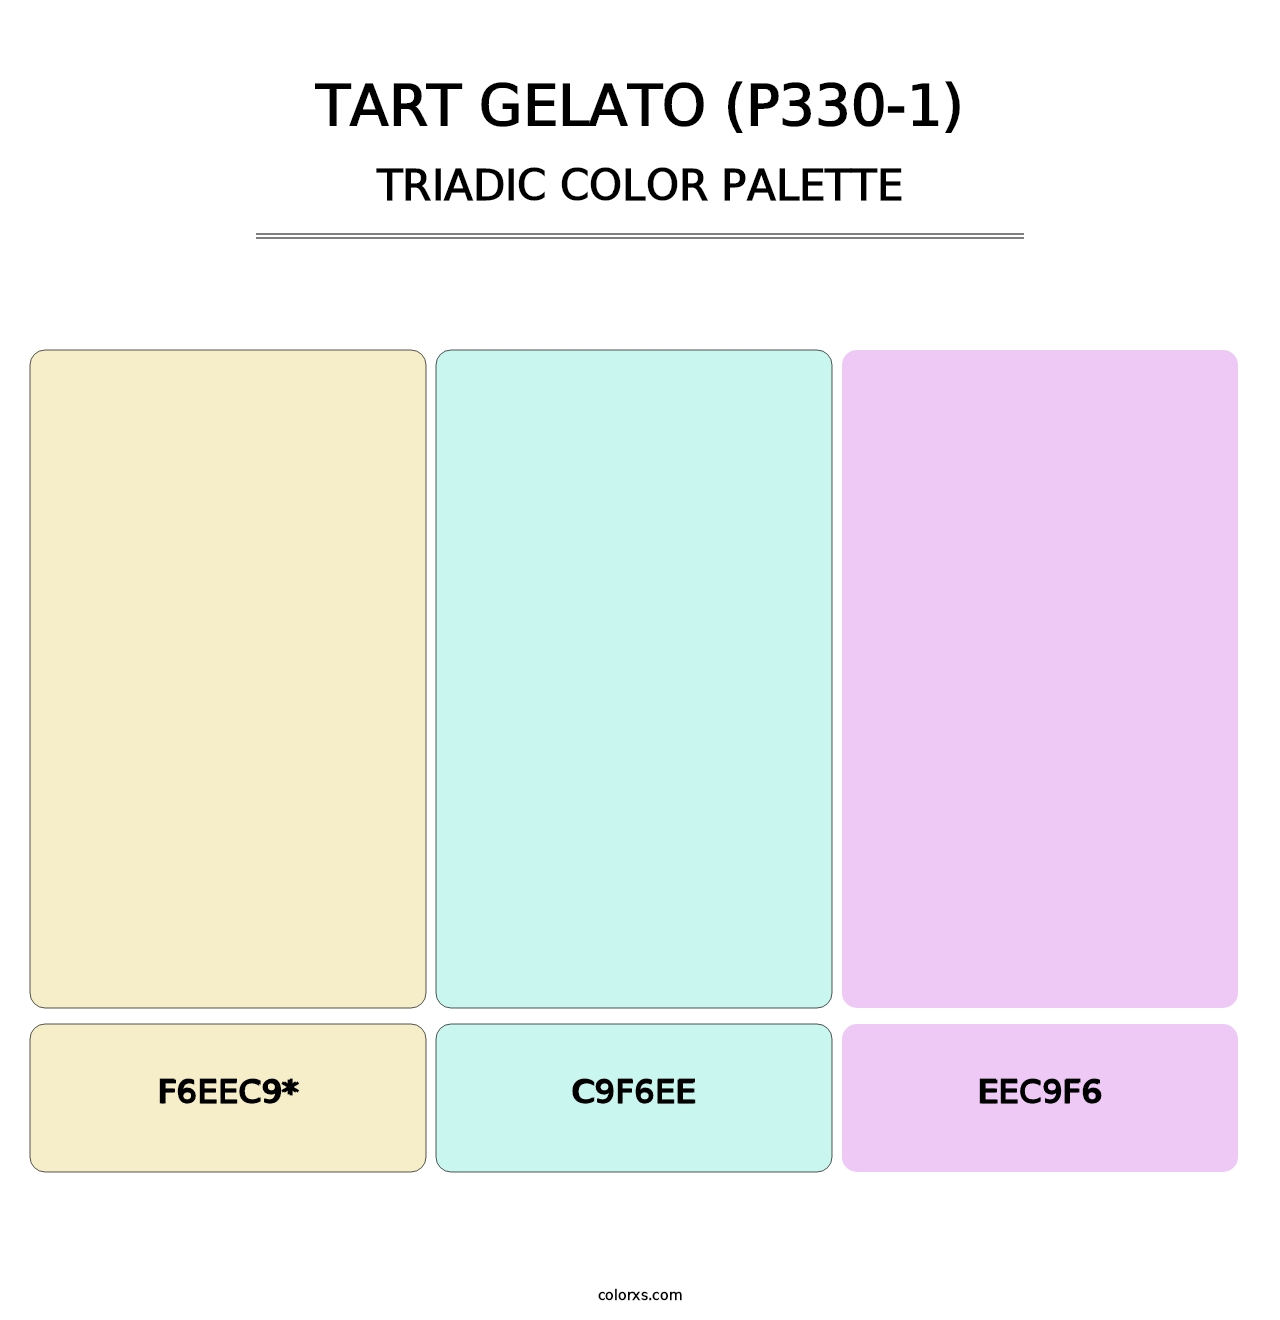 Tart Gelato (P330-1) - Triadic Color Palette